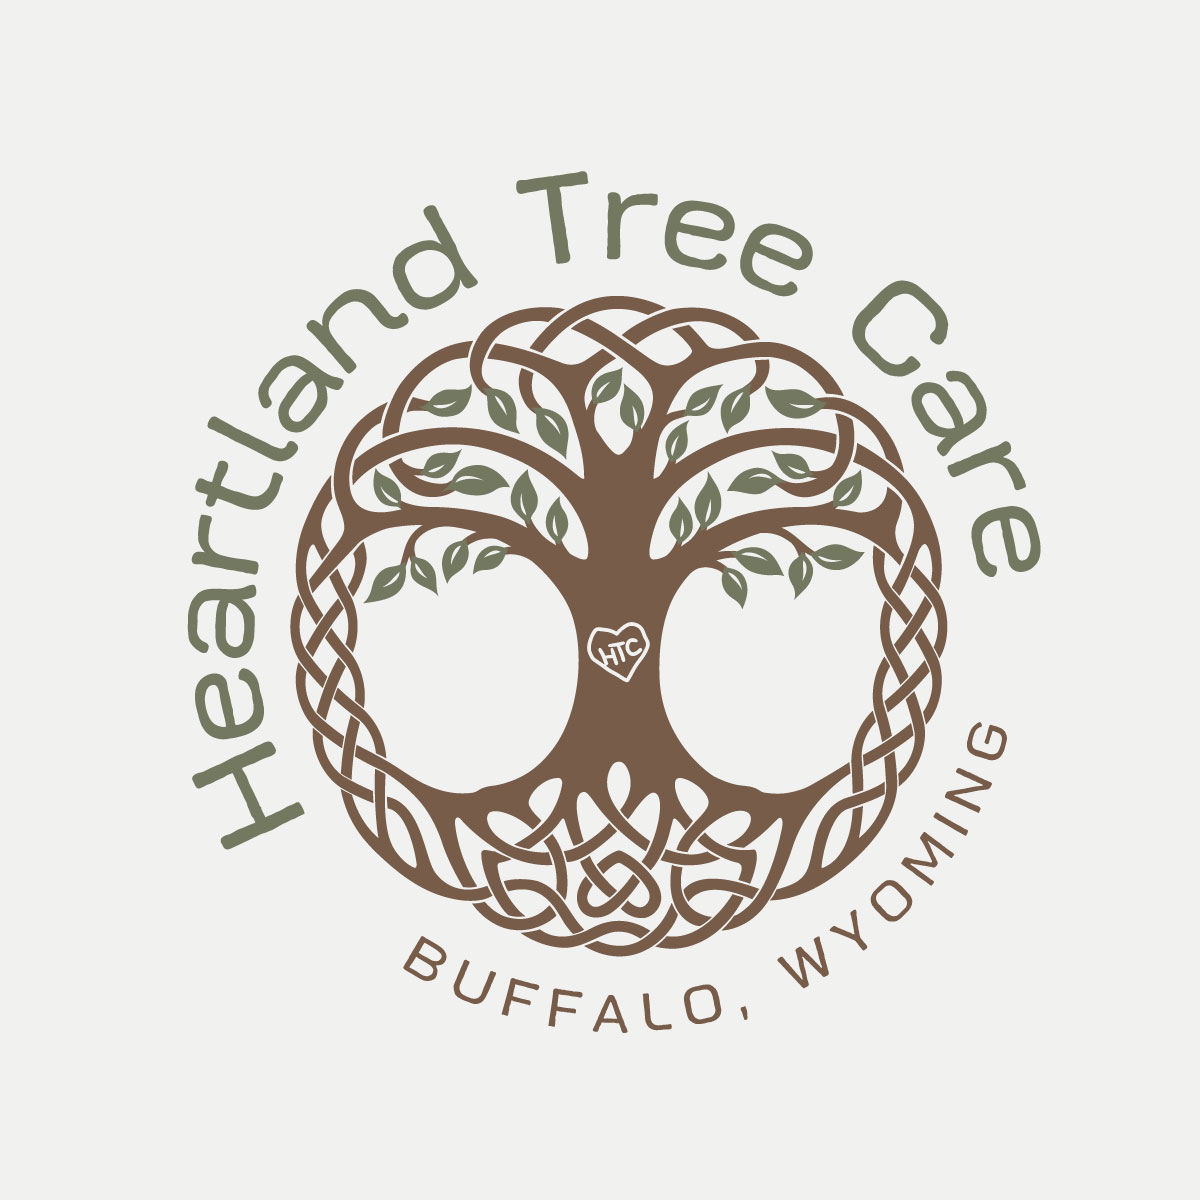 Heartland Tree Care logo